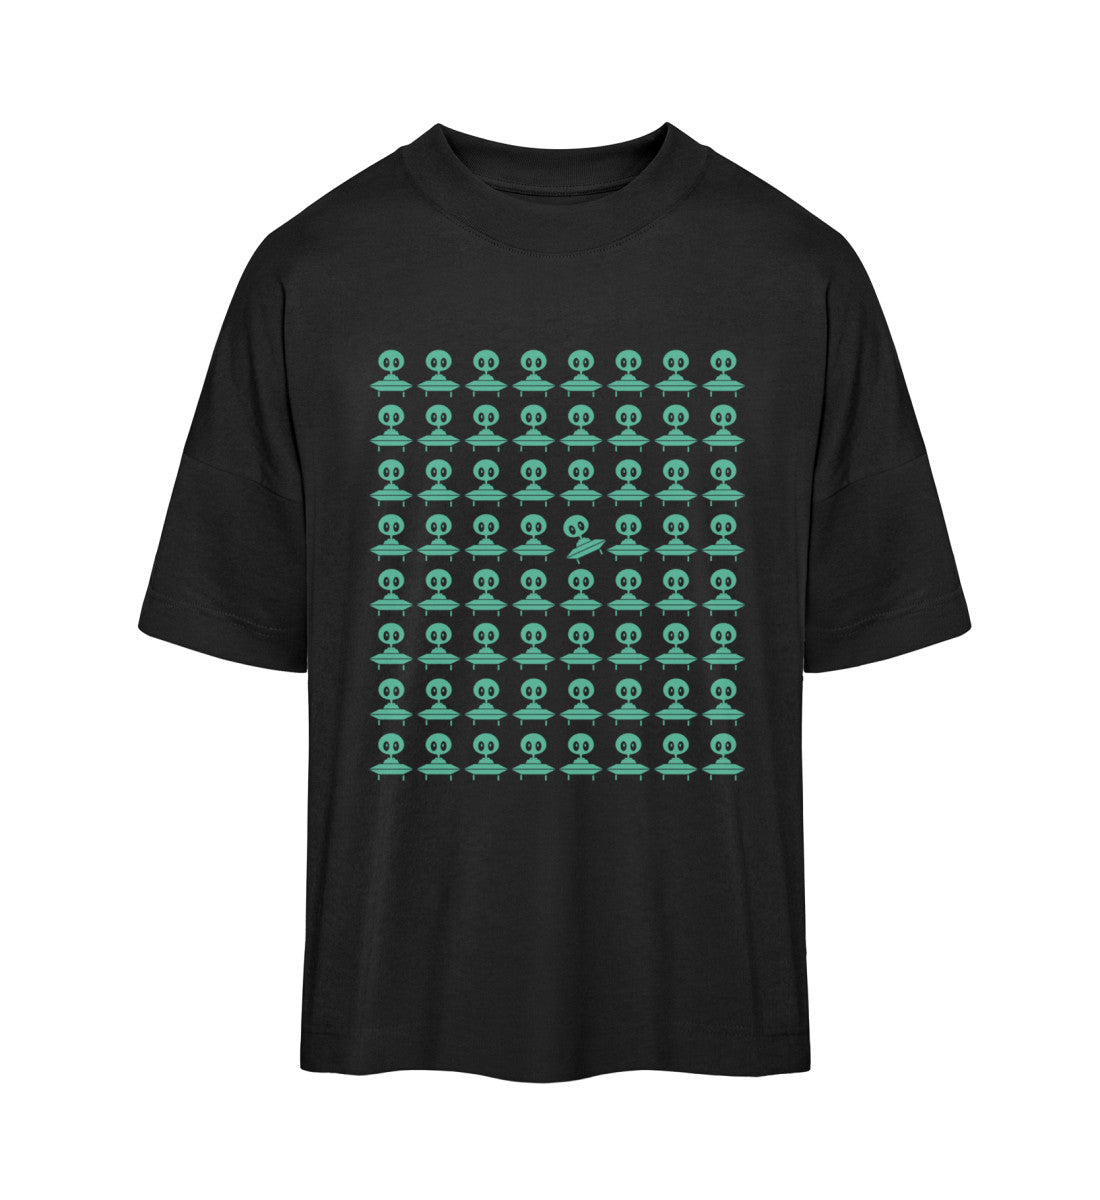 Schwarzes T-Shirt Unisex Oversize Fit für Frauen und Männer bedruckt mit dem Design der Roger Rockawoo Kollektion Space Invaders Property